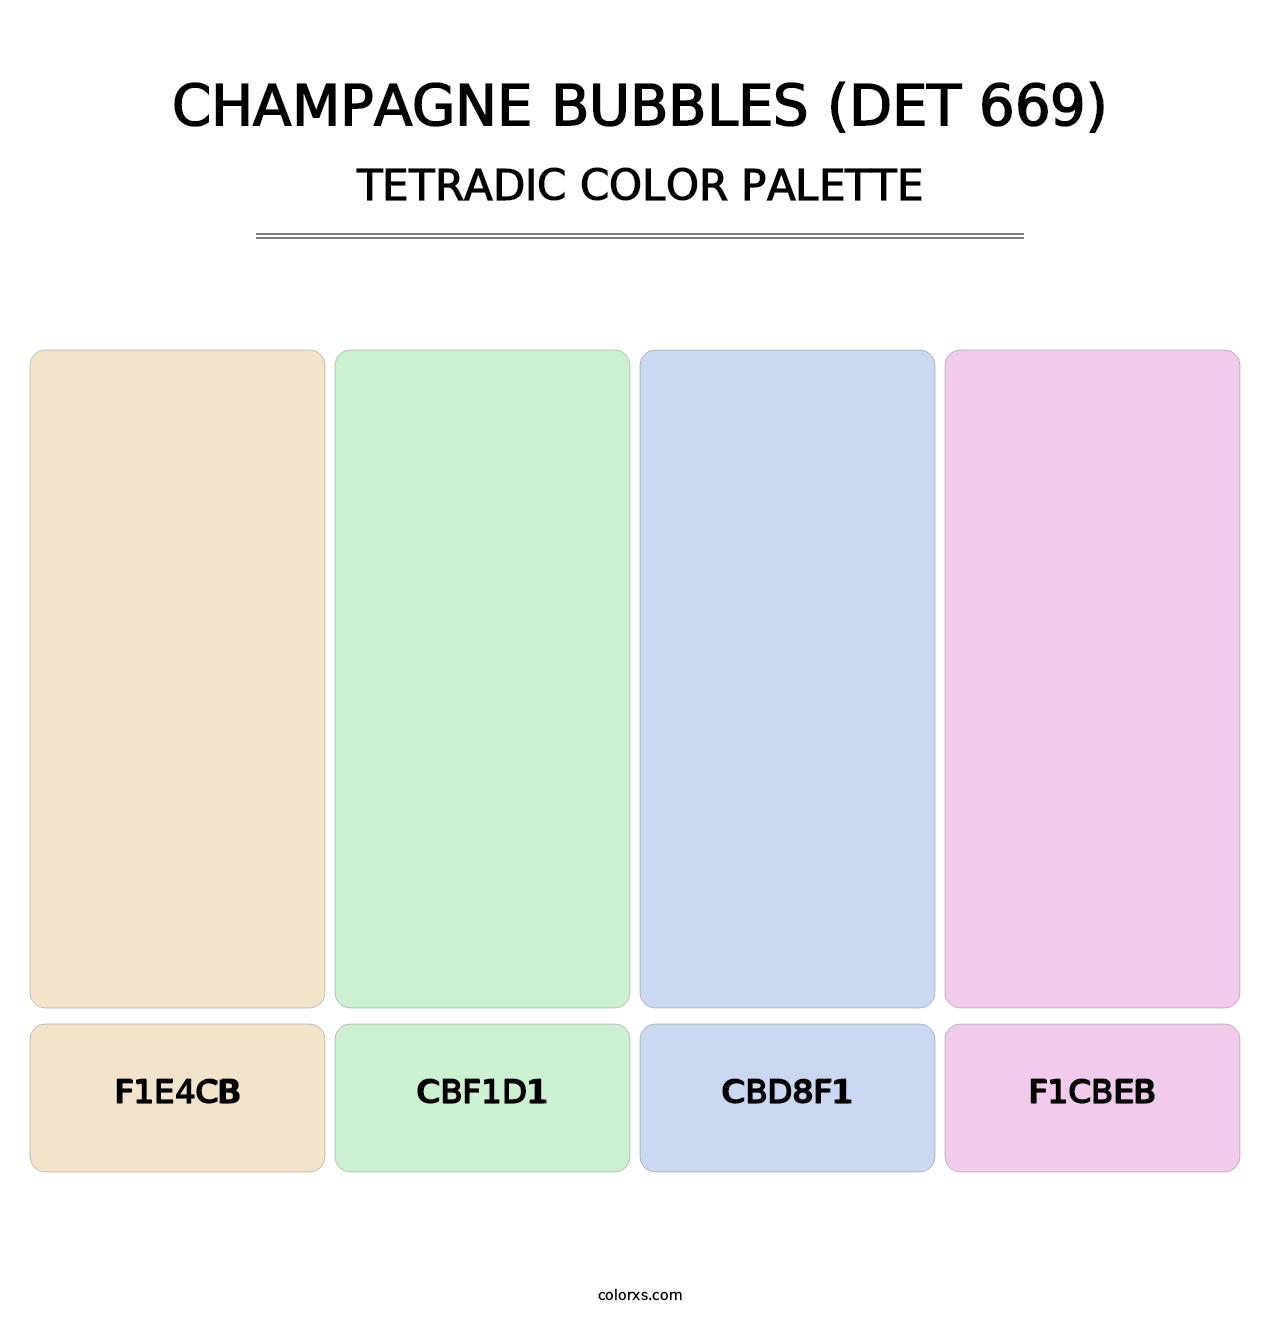 Champagne Bubbles (DET 669) - Tetradic Color Palette